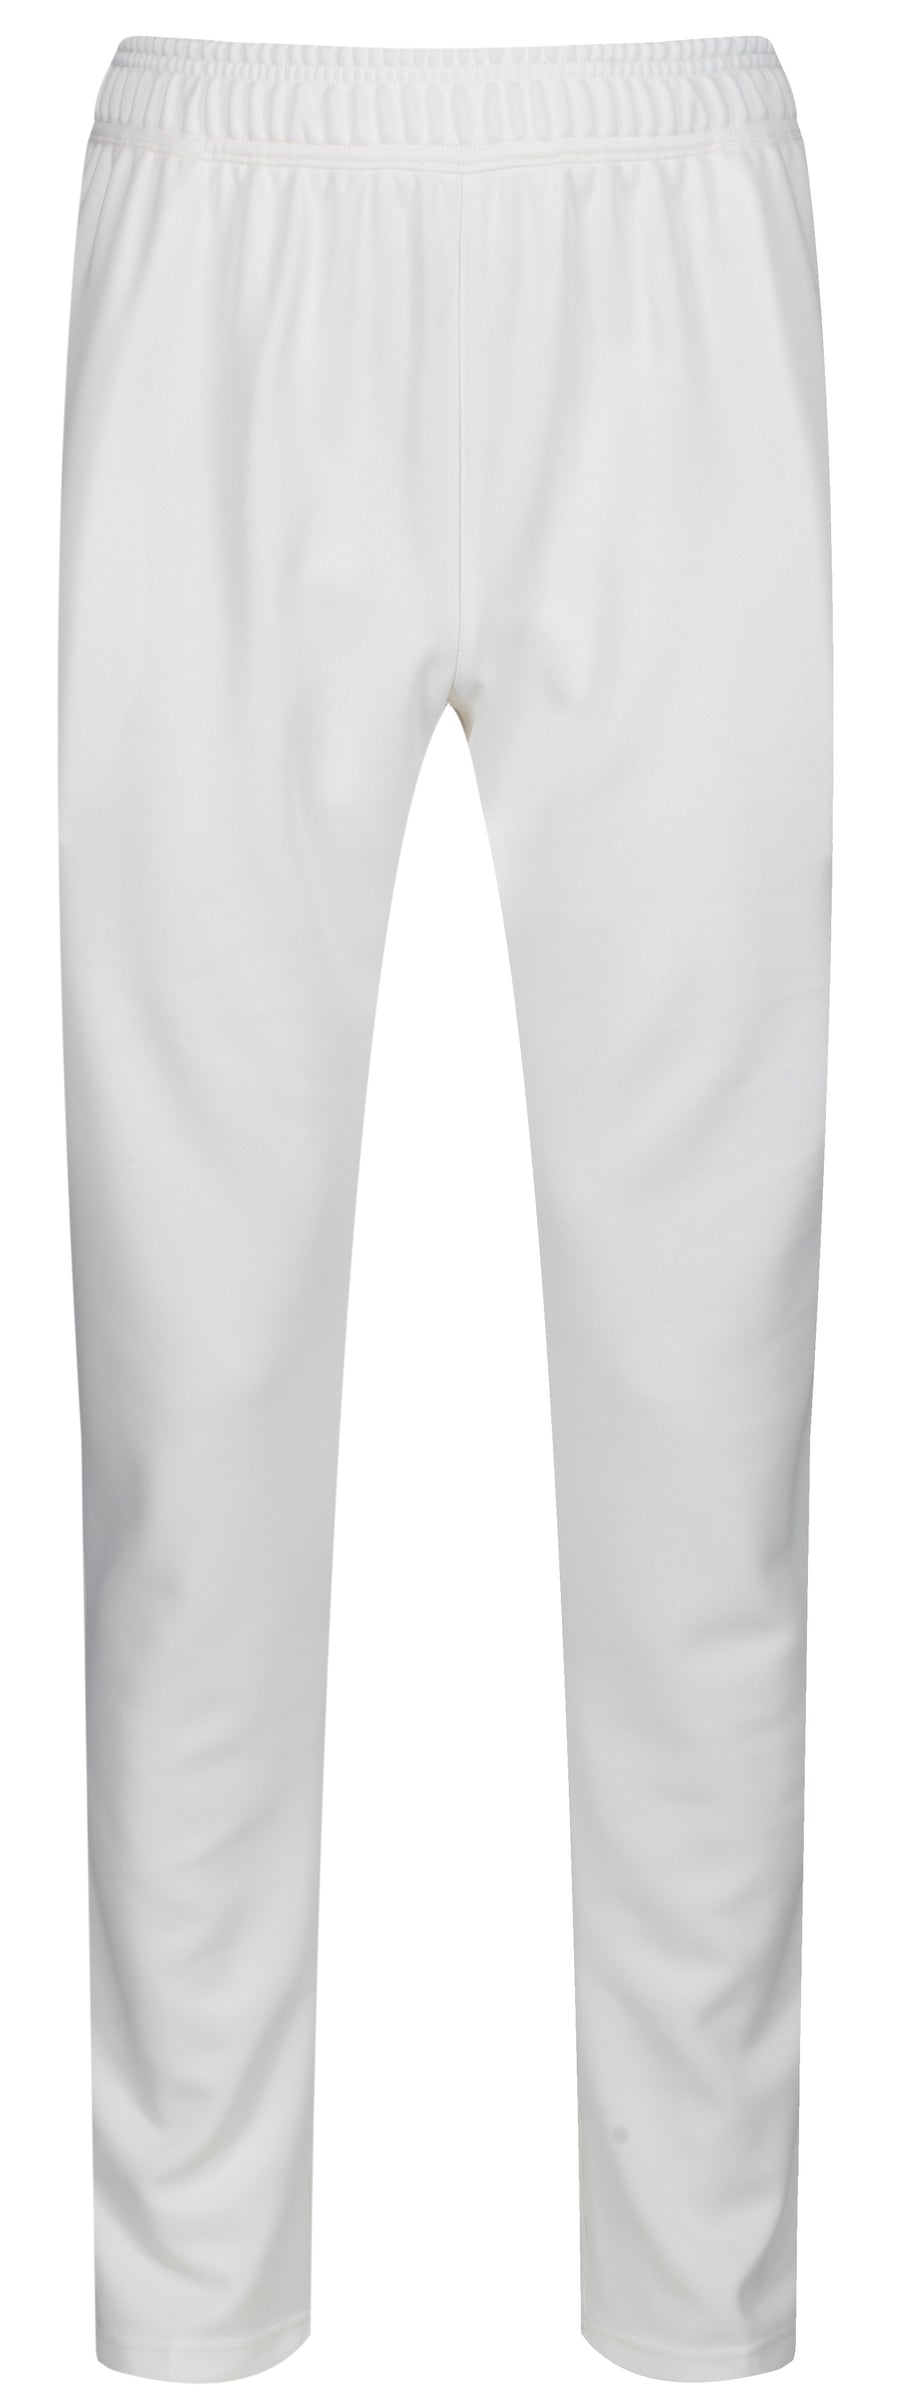 MBS Premium Cricket Trousers - Junior